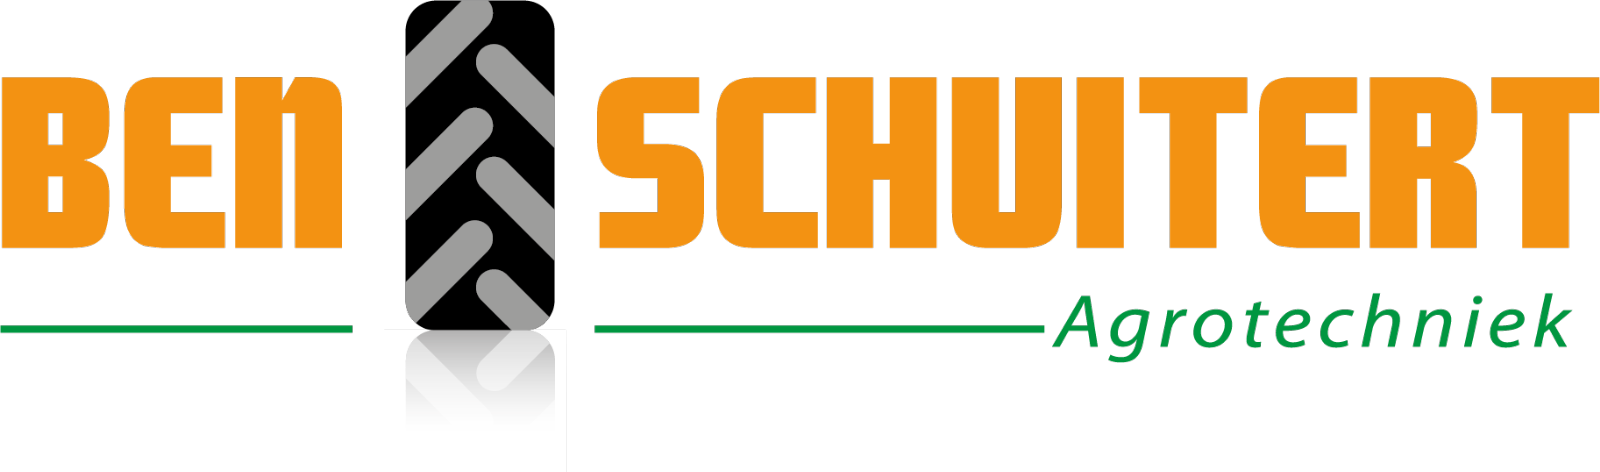 Ben Schuitert Agrotechniek logo